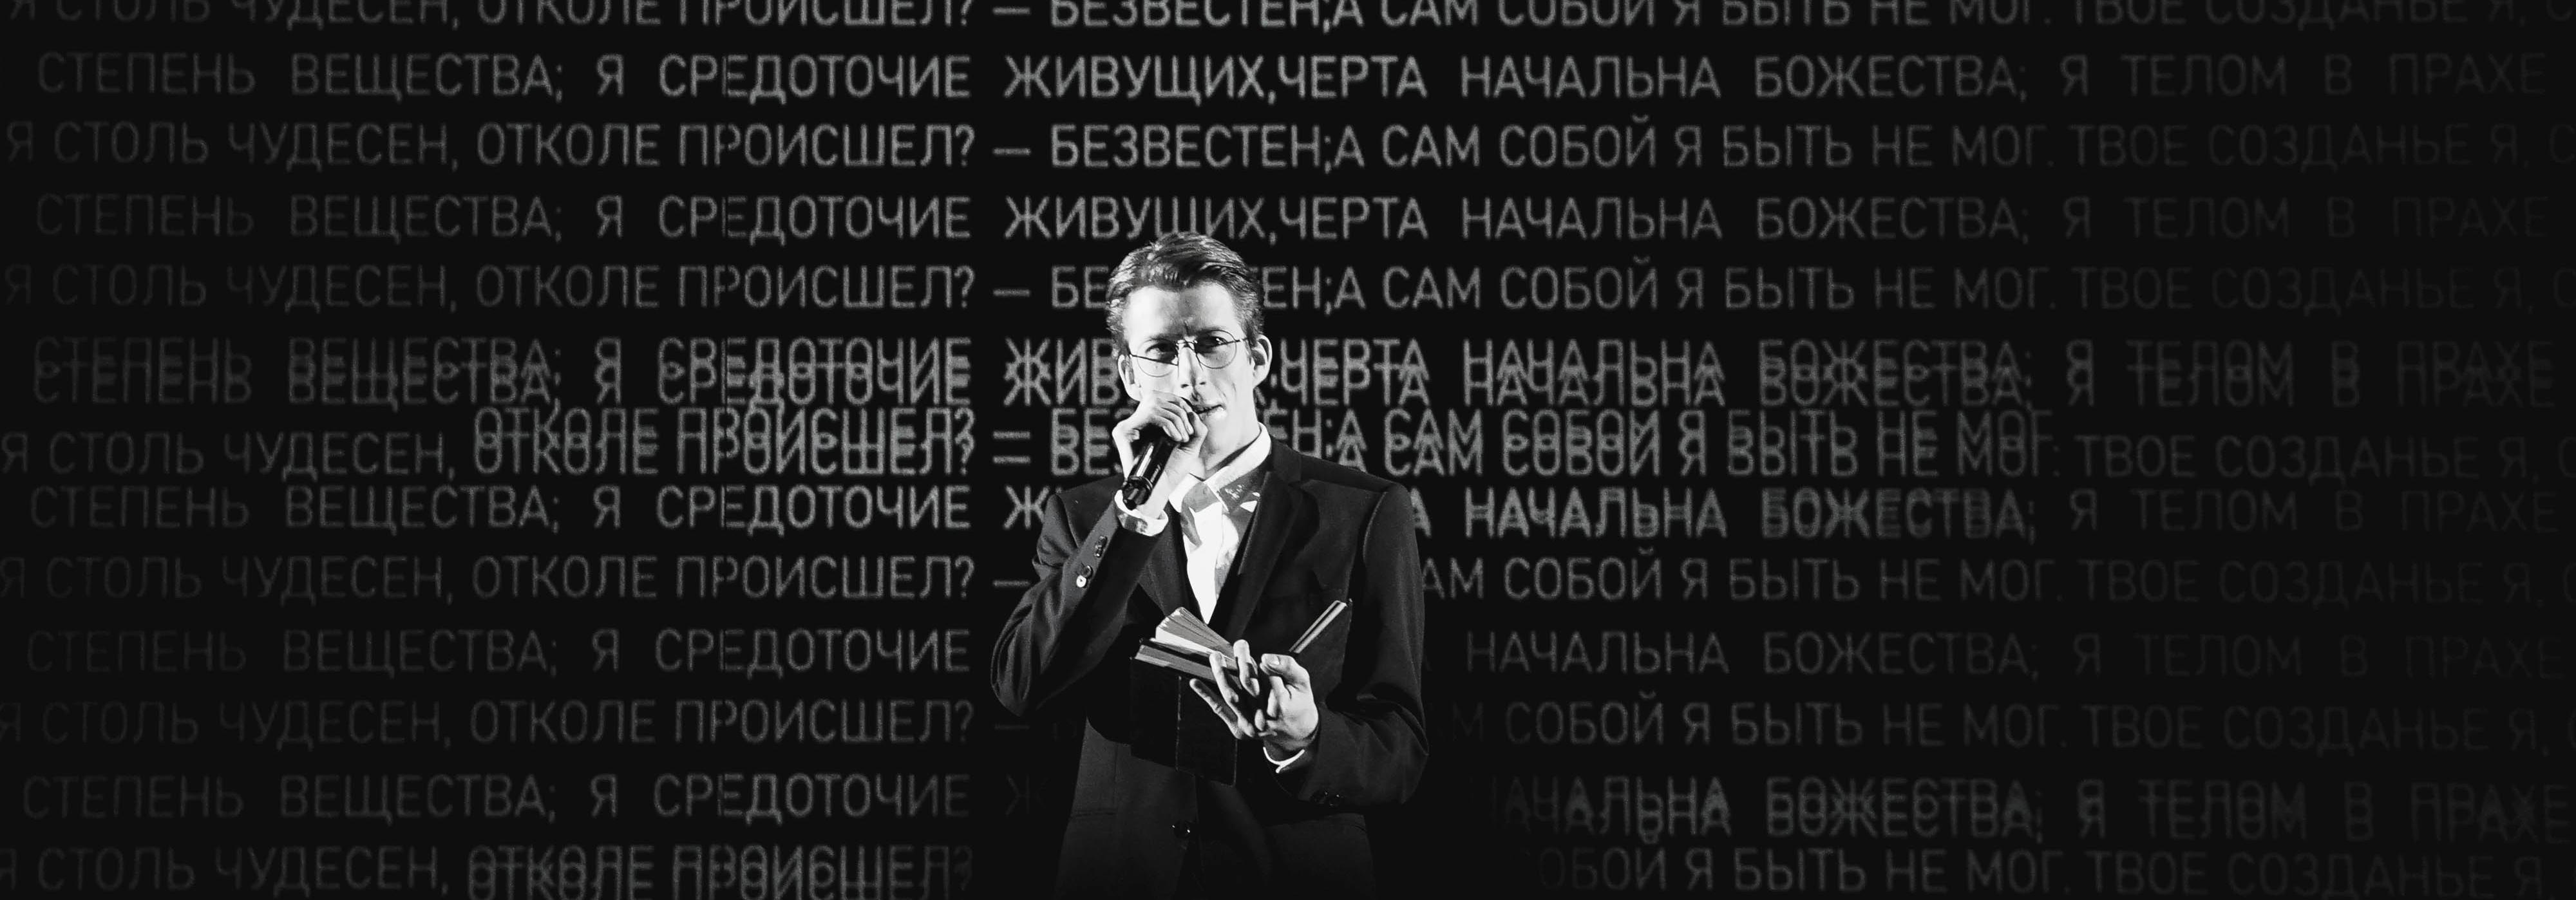 Спектакль «Тварь» на Новой сцене Александринского театра